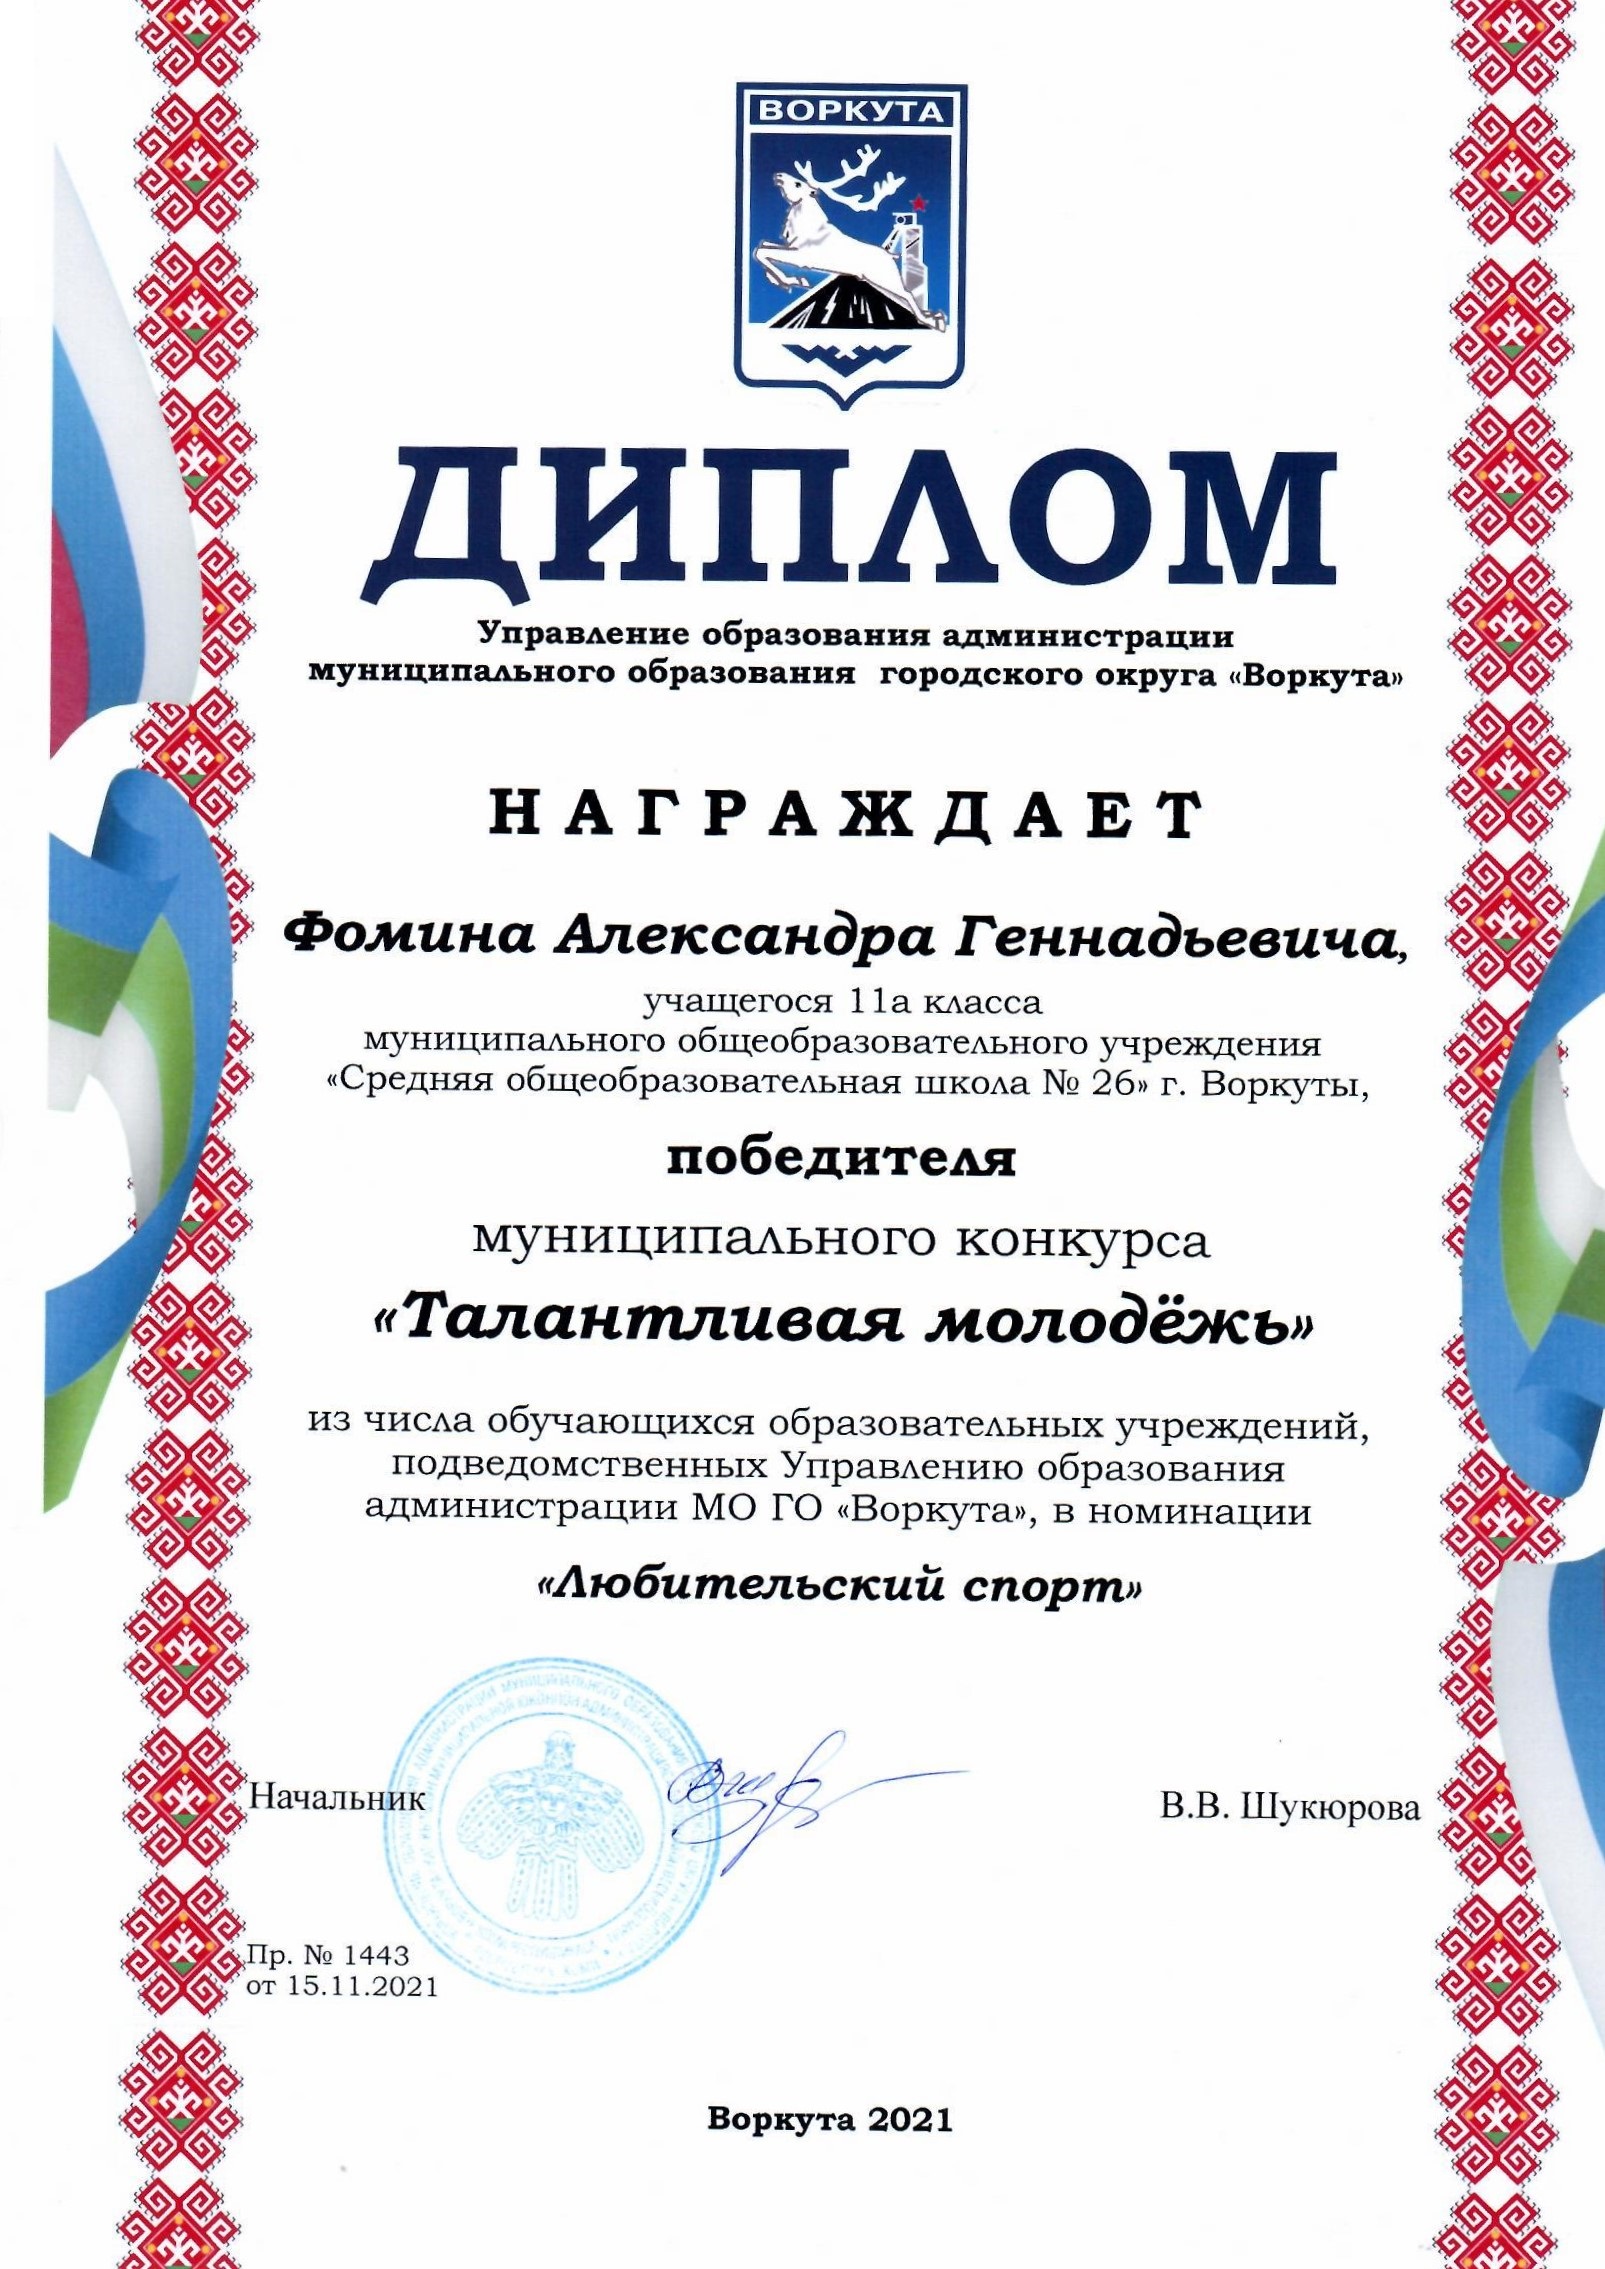 Диплом победителя муниципального конкурса "Талантливая молодёжь" в номинации  "Любительский спорт"